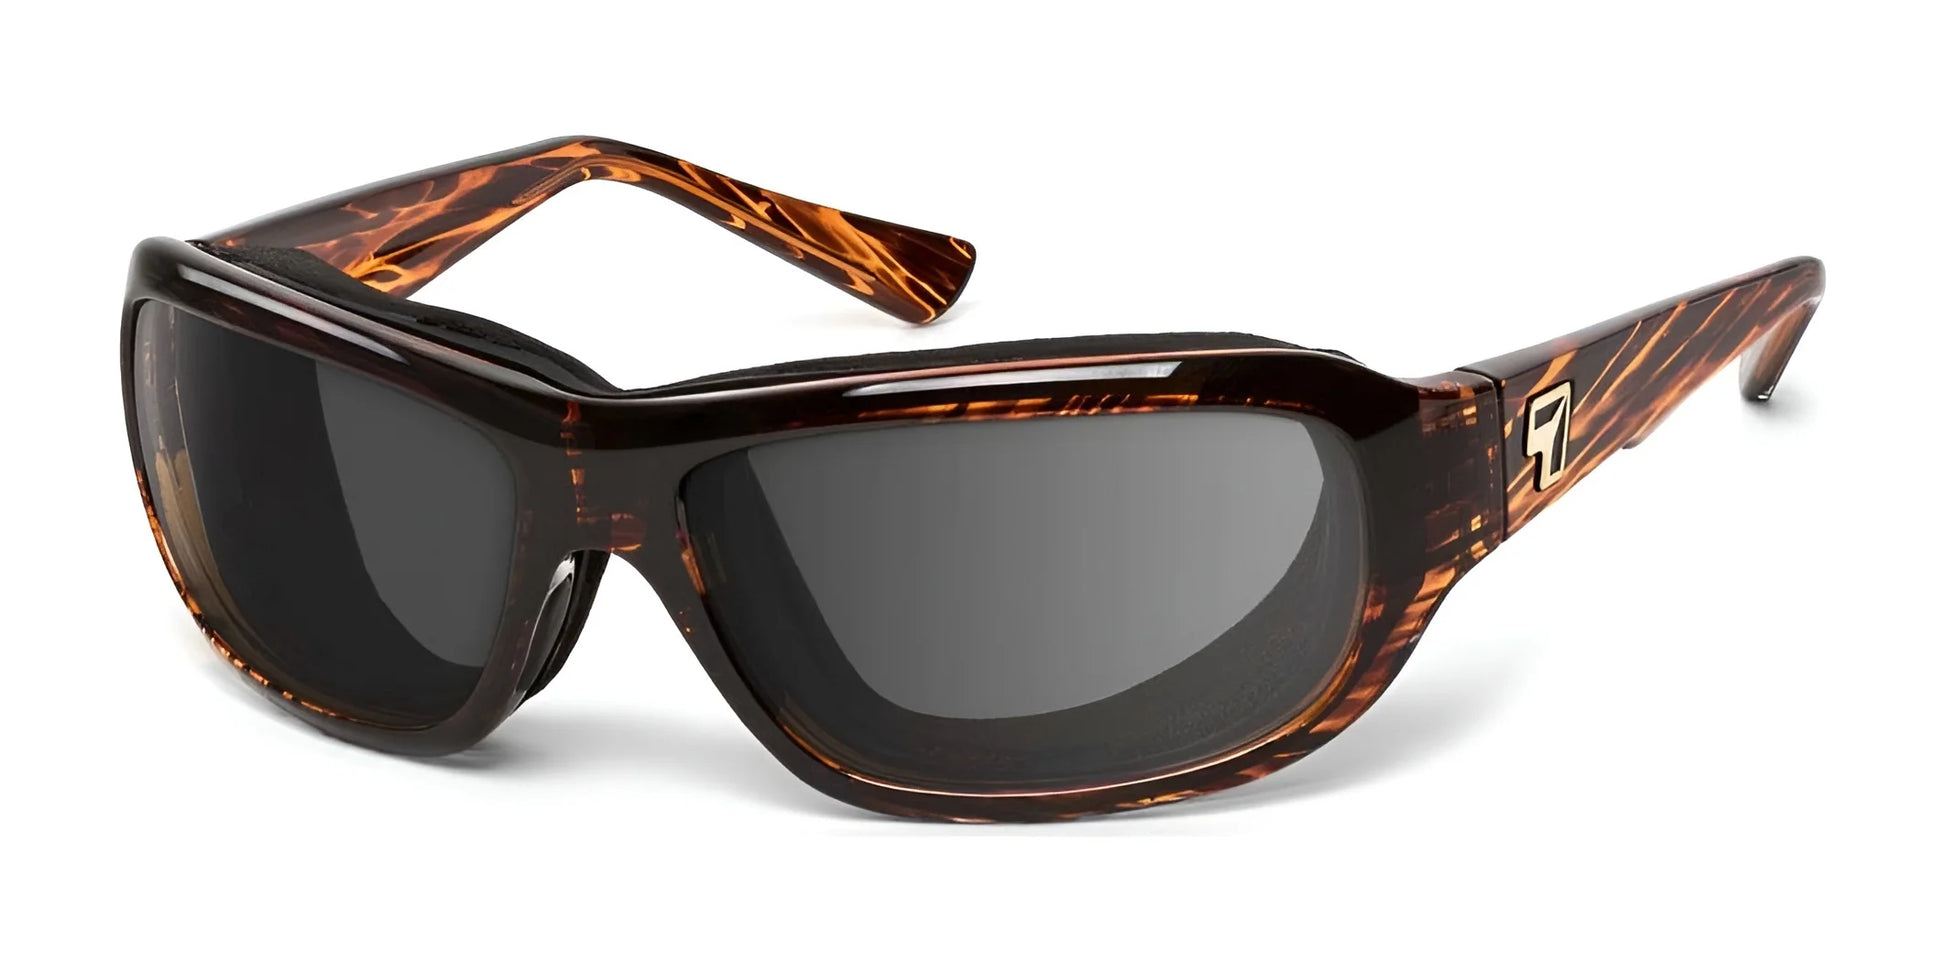 7eye Aspen Sunglasses Sunset Tortoise / DARKshift Photochromic - Clr to DARK Gray